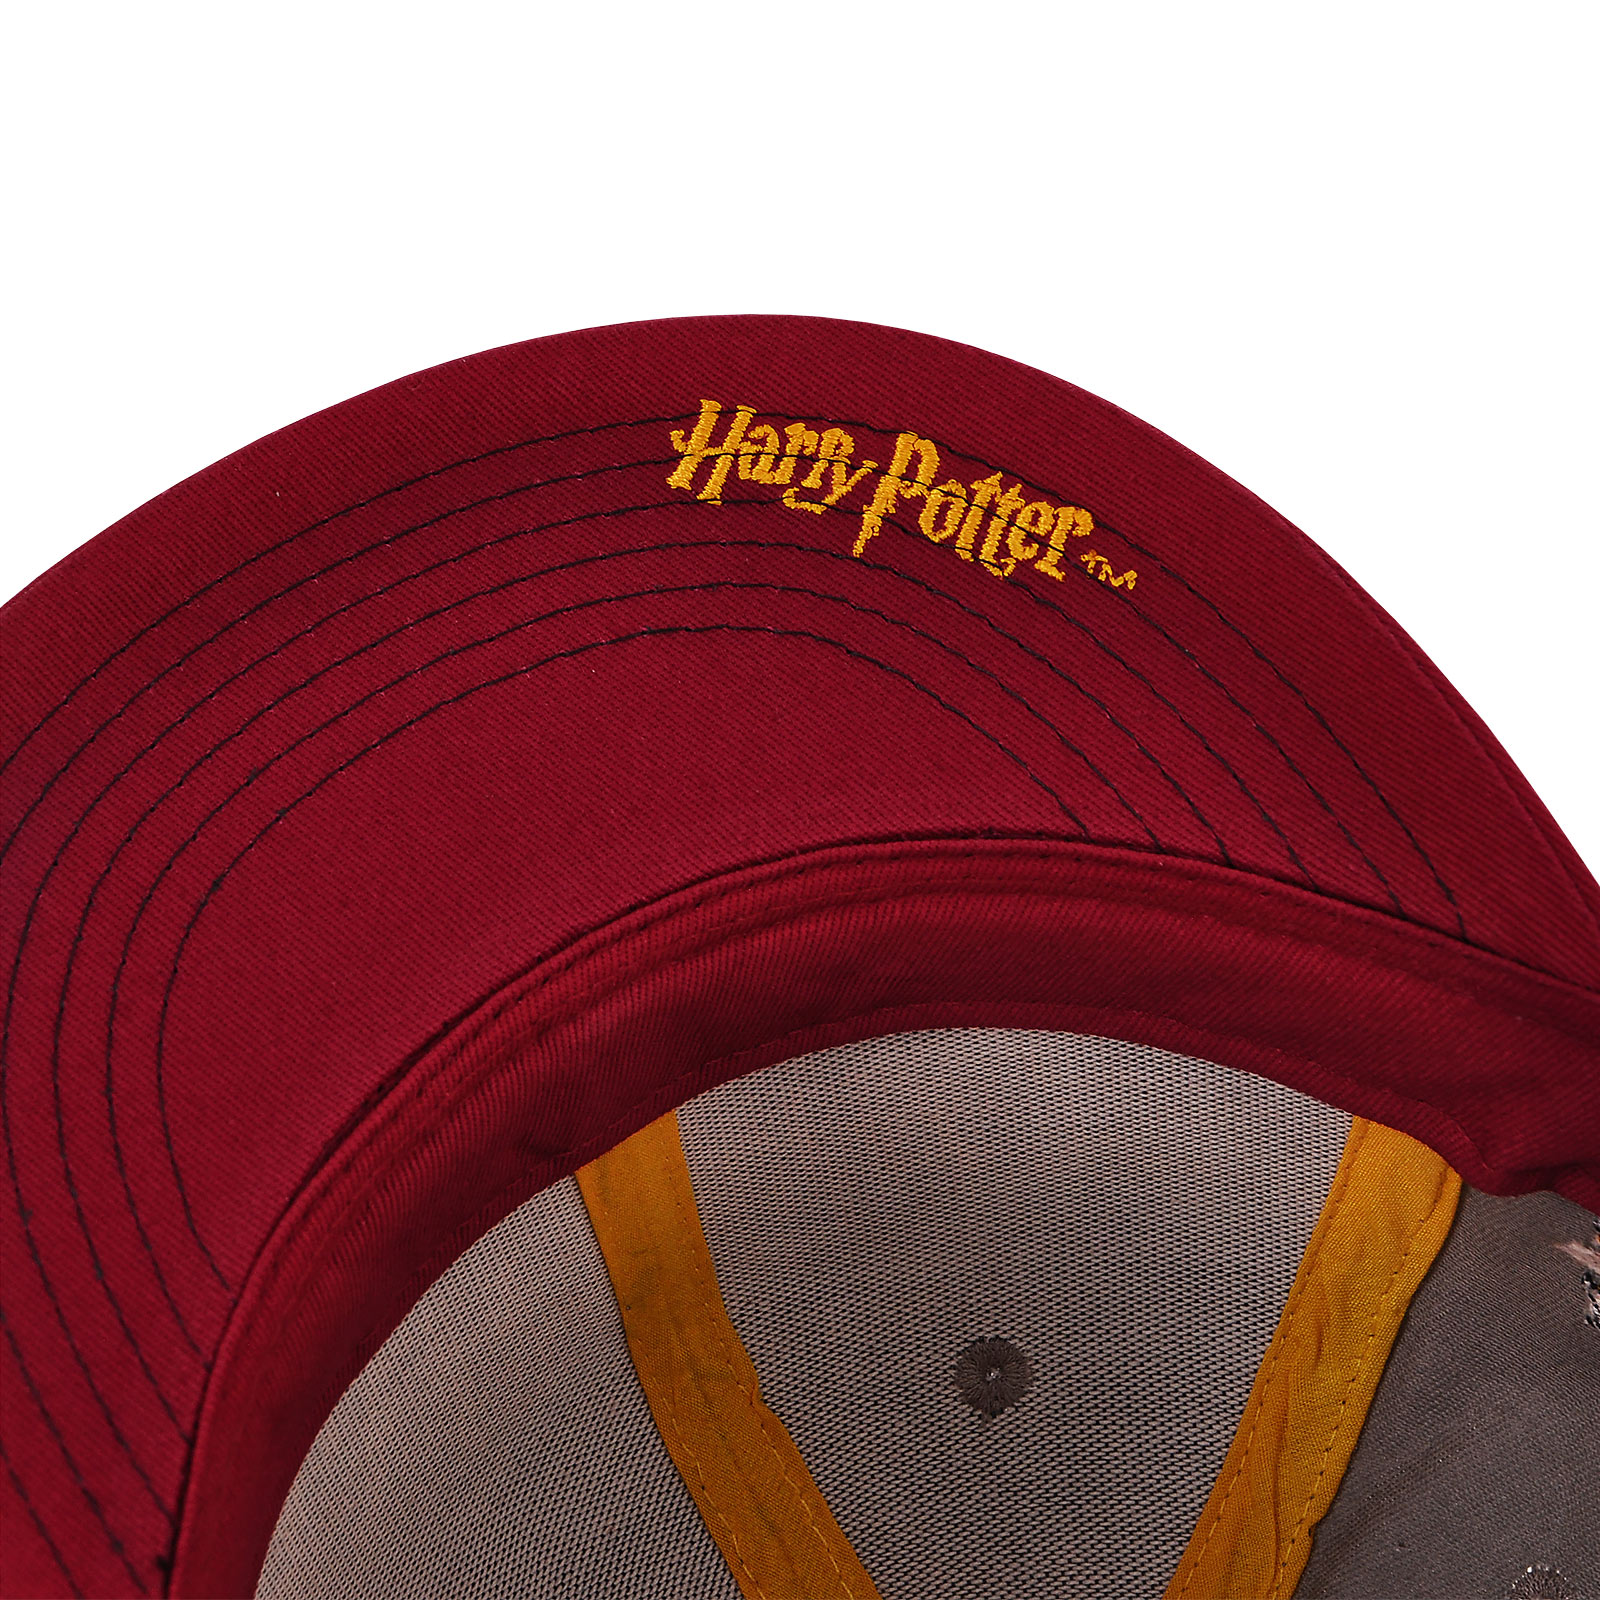 Harry Potter - Gryffindor College Snapback Cap